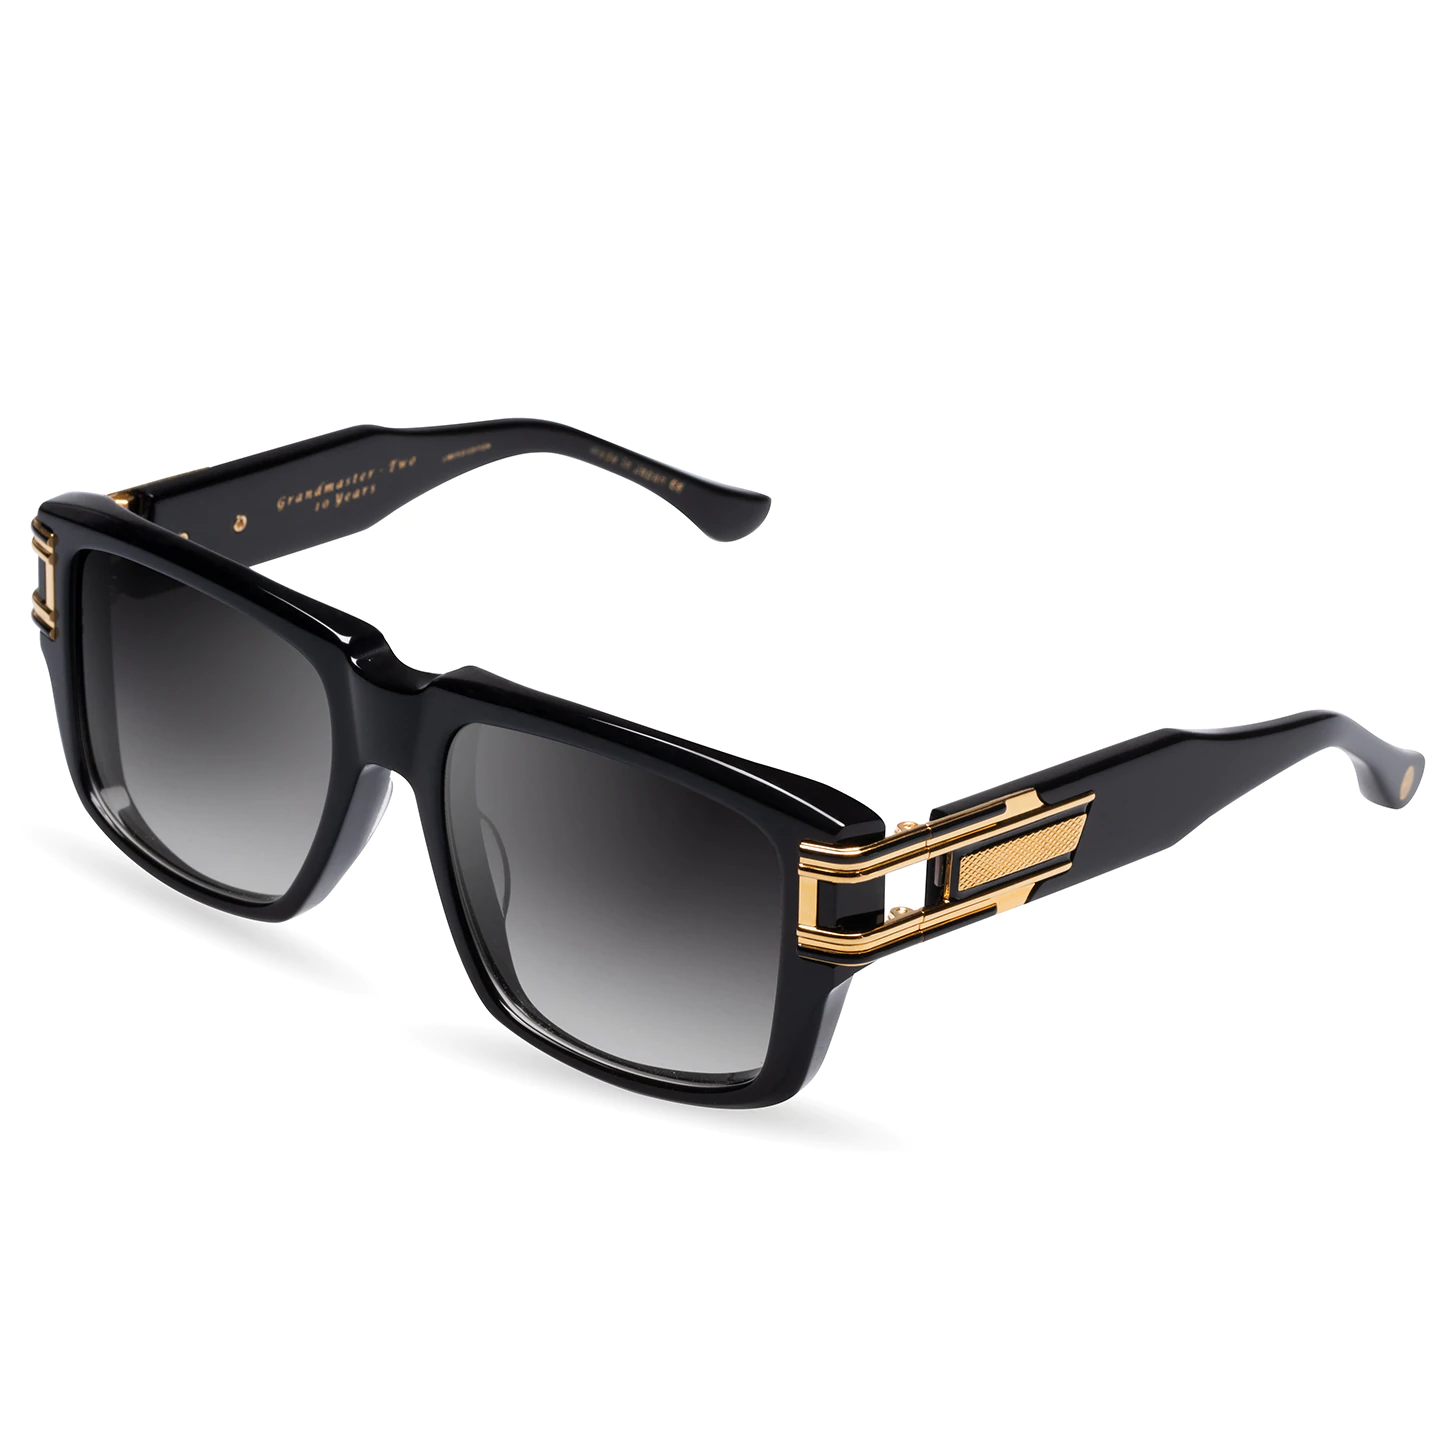 Dita Grandmaster-Two Sunglasses - Purevision - The Sunglasses Shop 